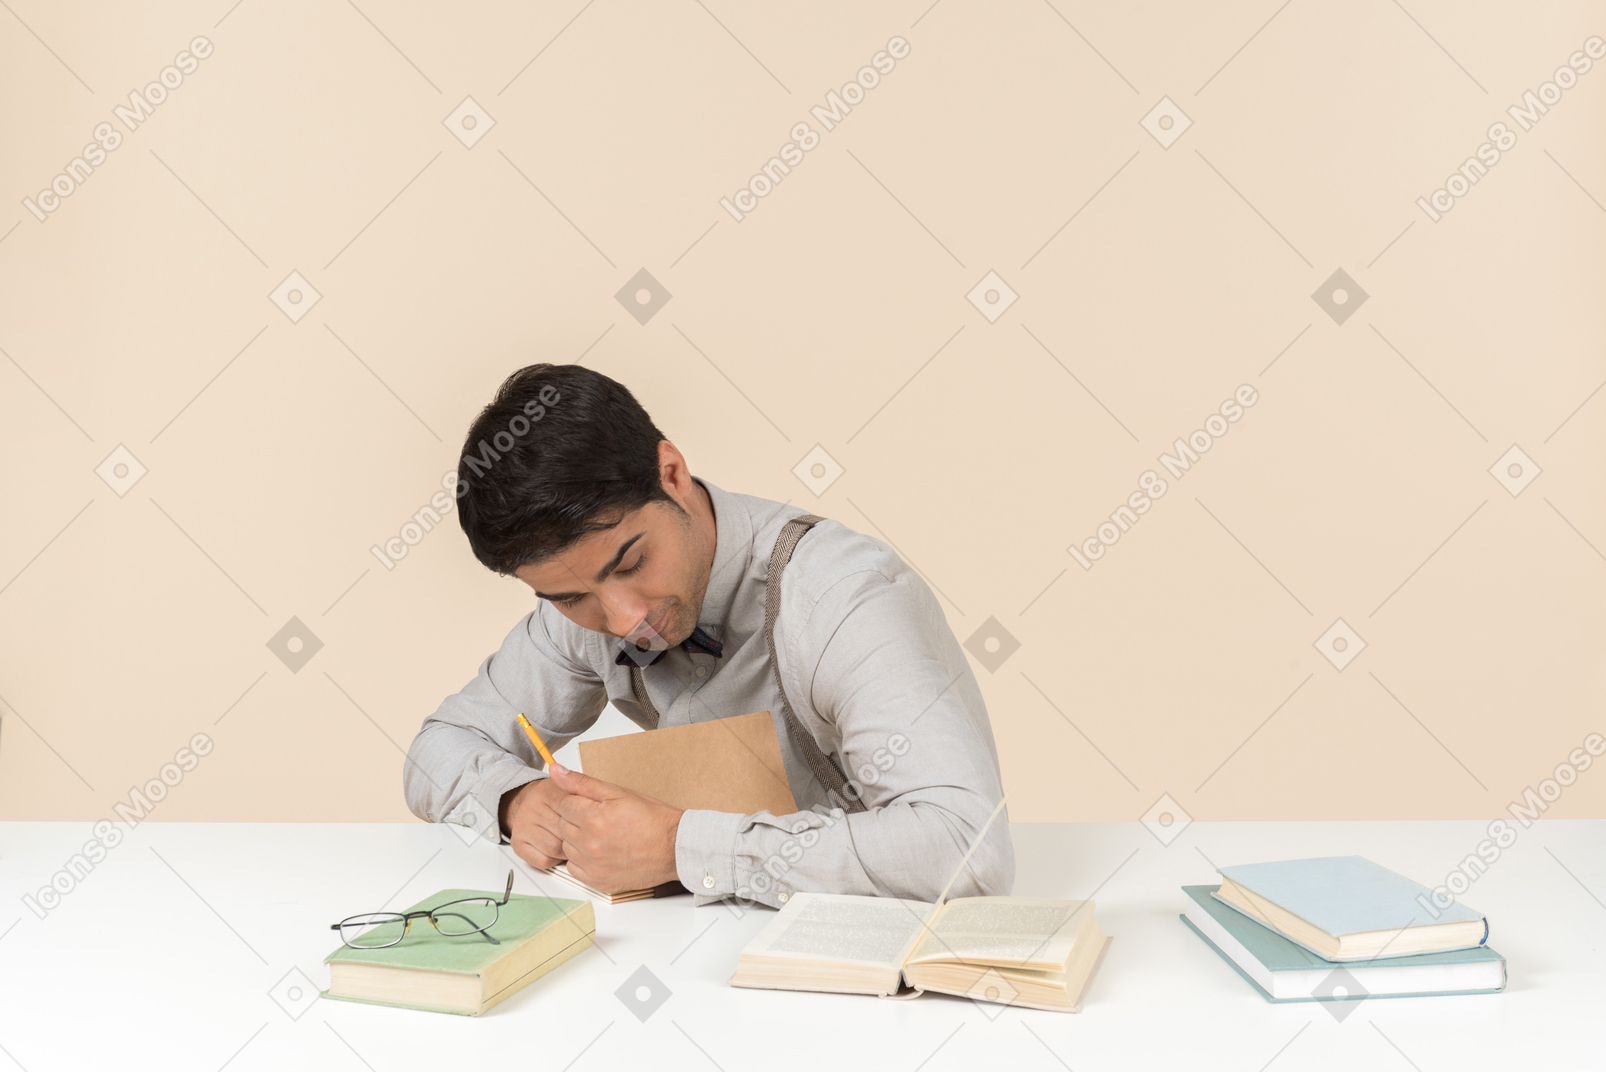 테이블에 앉아 책에 뭔가를 쓰는 젊은 성인 학생